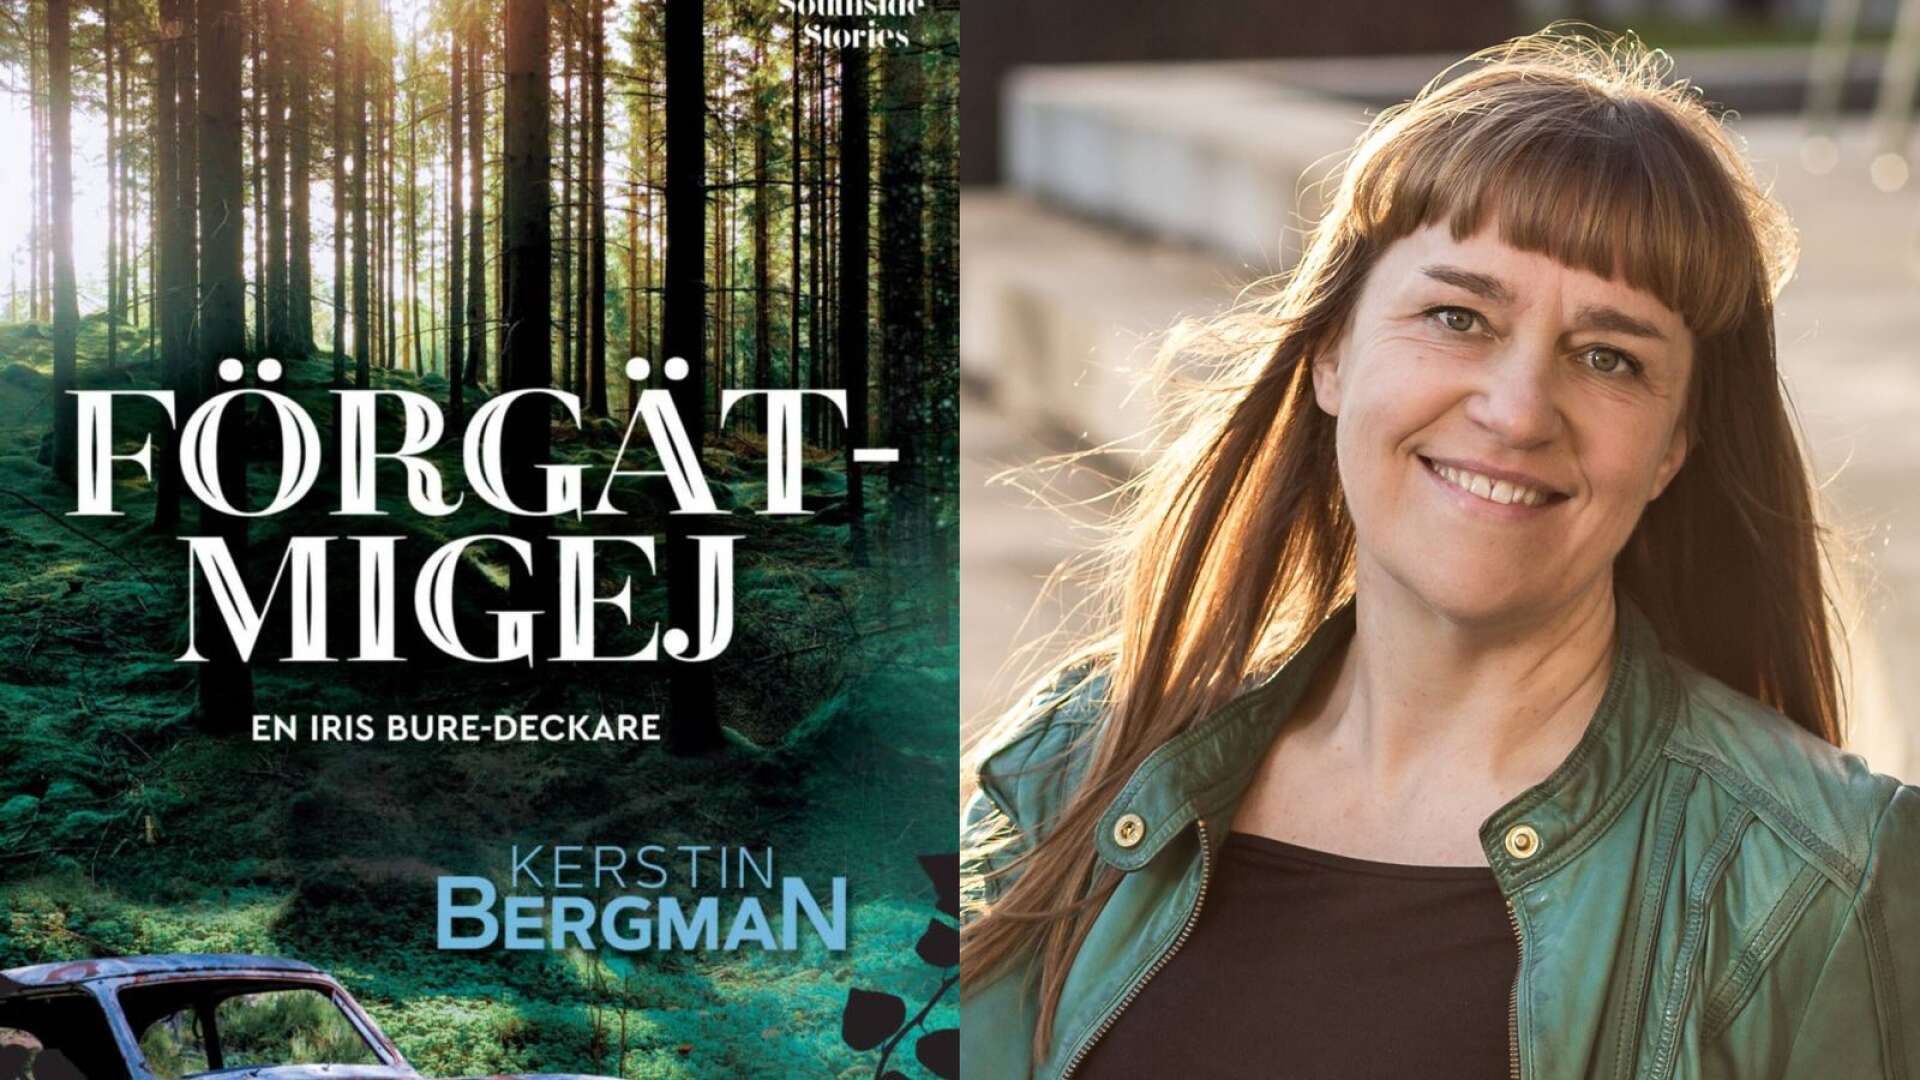 Kerstin Bergmans nya deckare ”Förgätmigej”, som släpps 2 september, utspelar sig i Dalsland. 